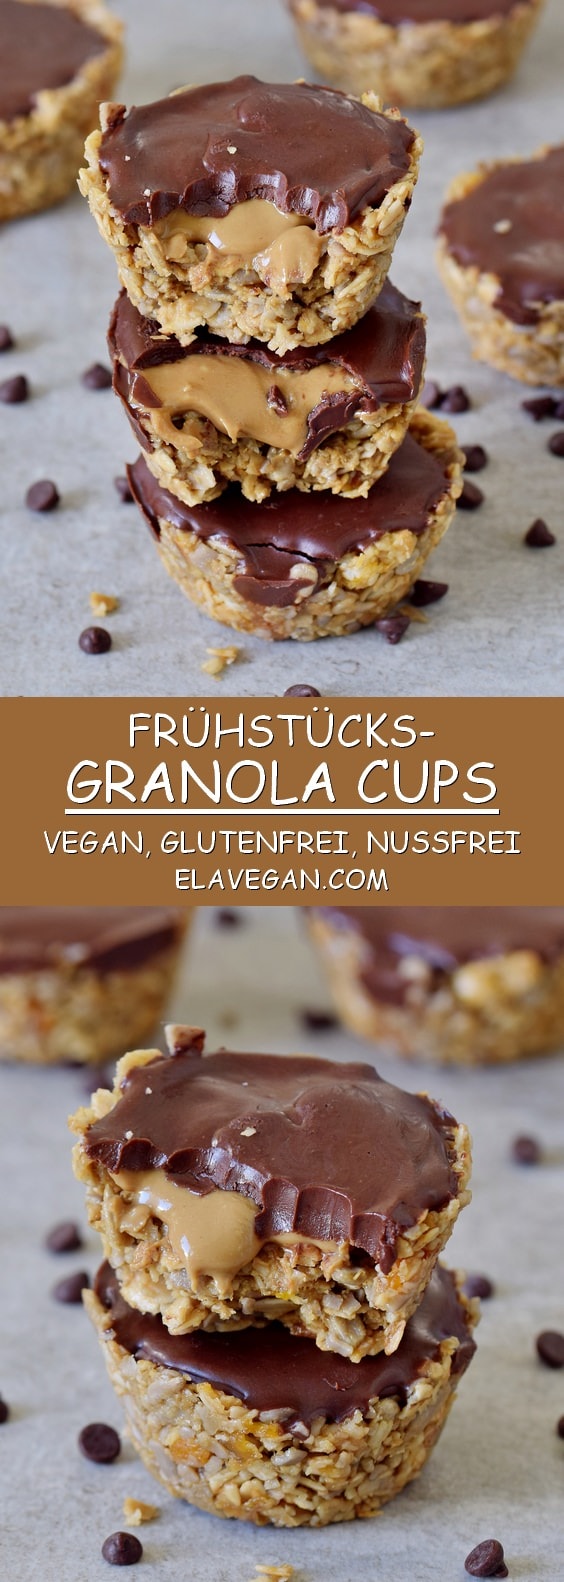 granola cups mit sonnenblumenkernmus und schokolade rezept zum frühstück oder dessert vegan glutenfrei nussfrei